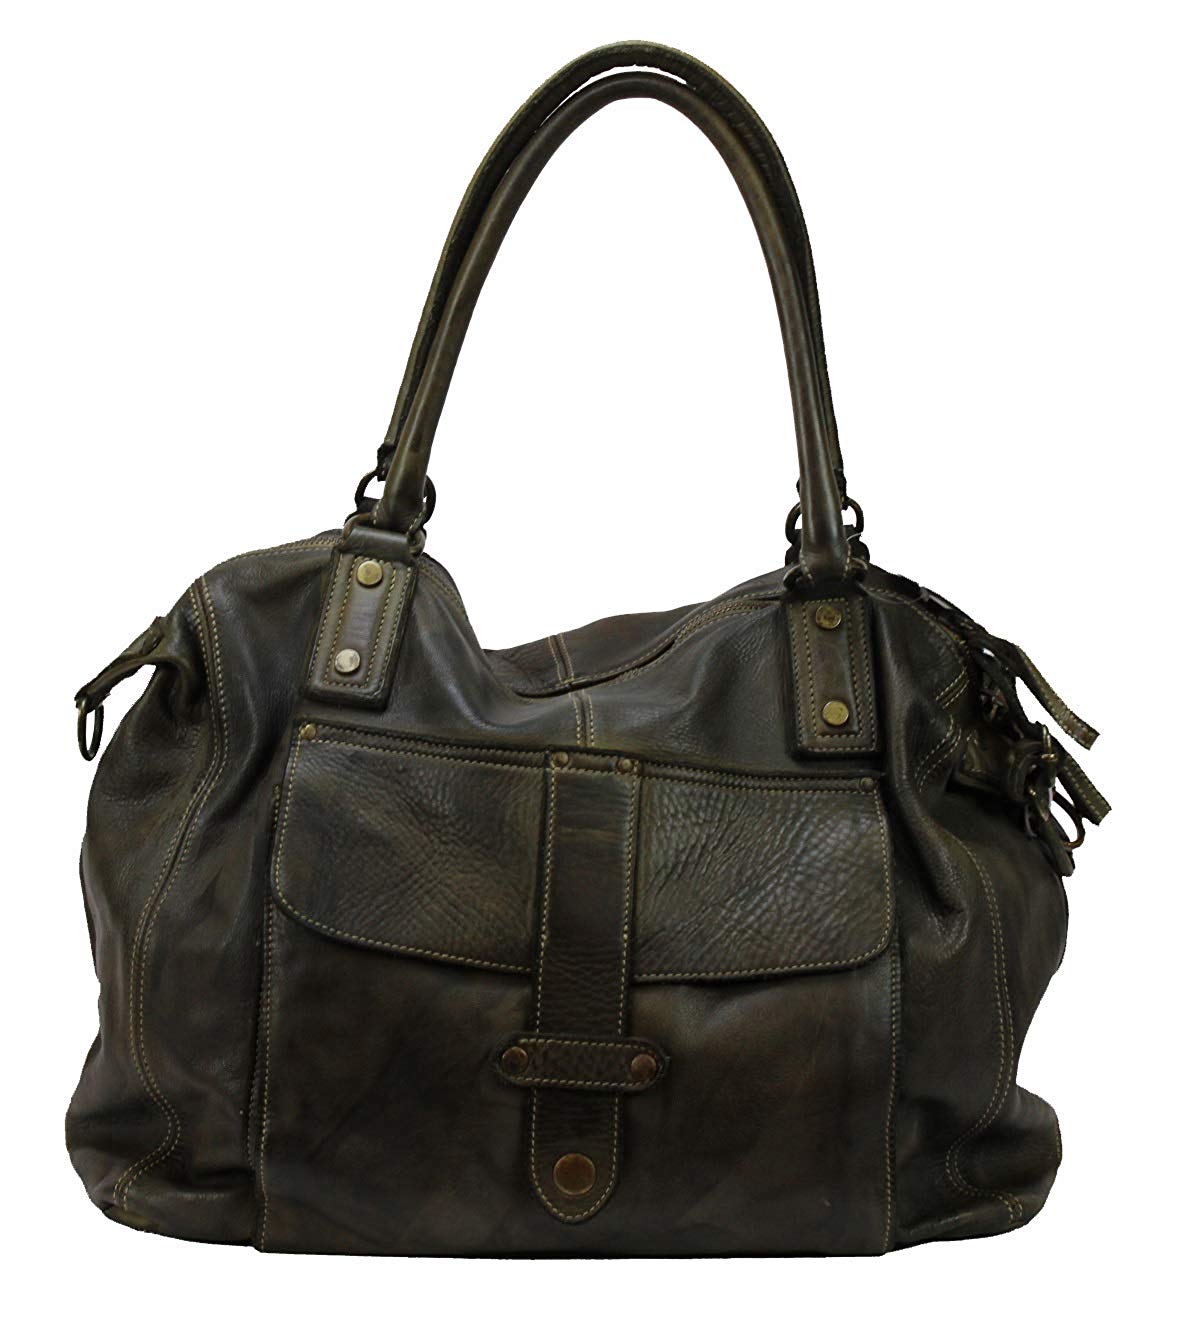 BZNA Bag Viola verde Italy Designer Damen Handtasche Schultertasche Tasche Leder Shopper Neu